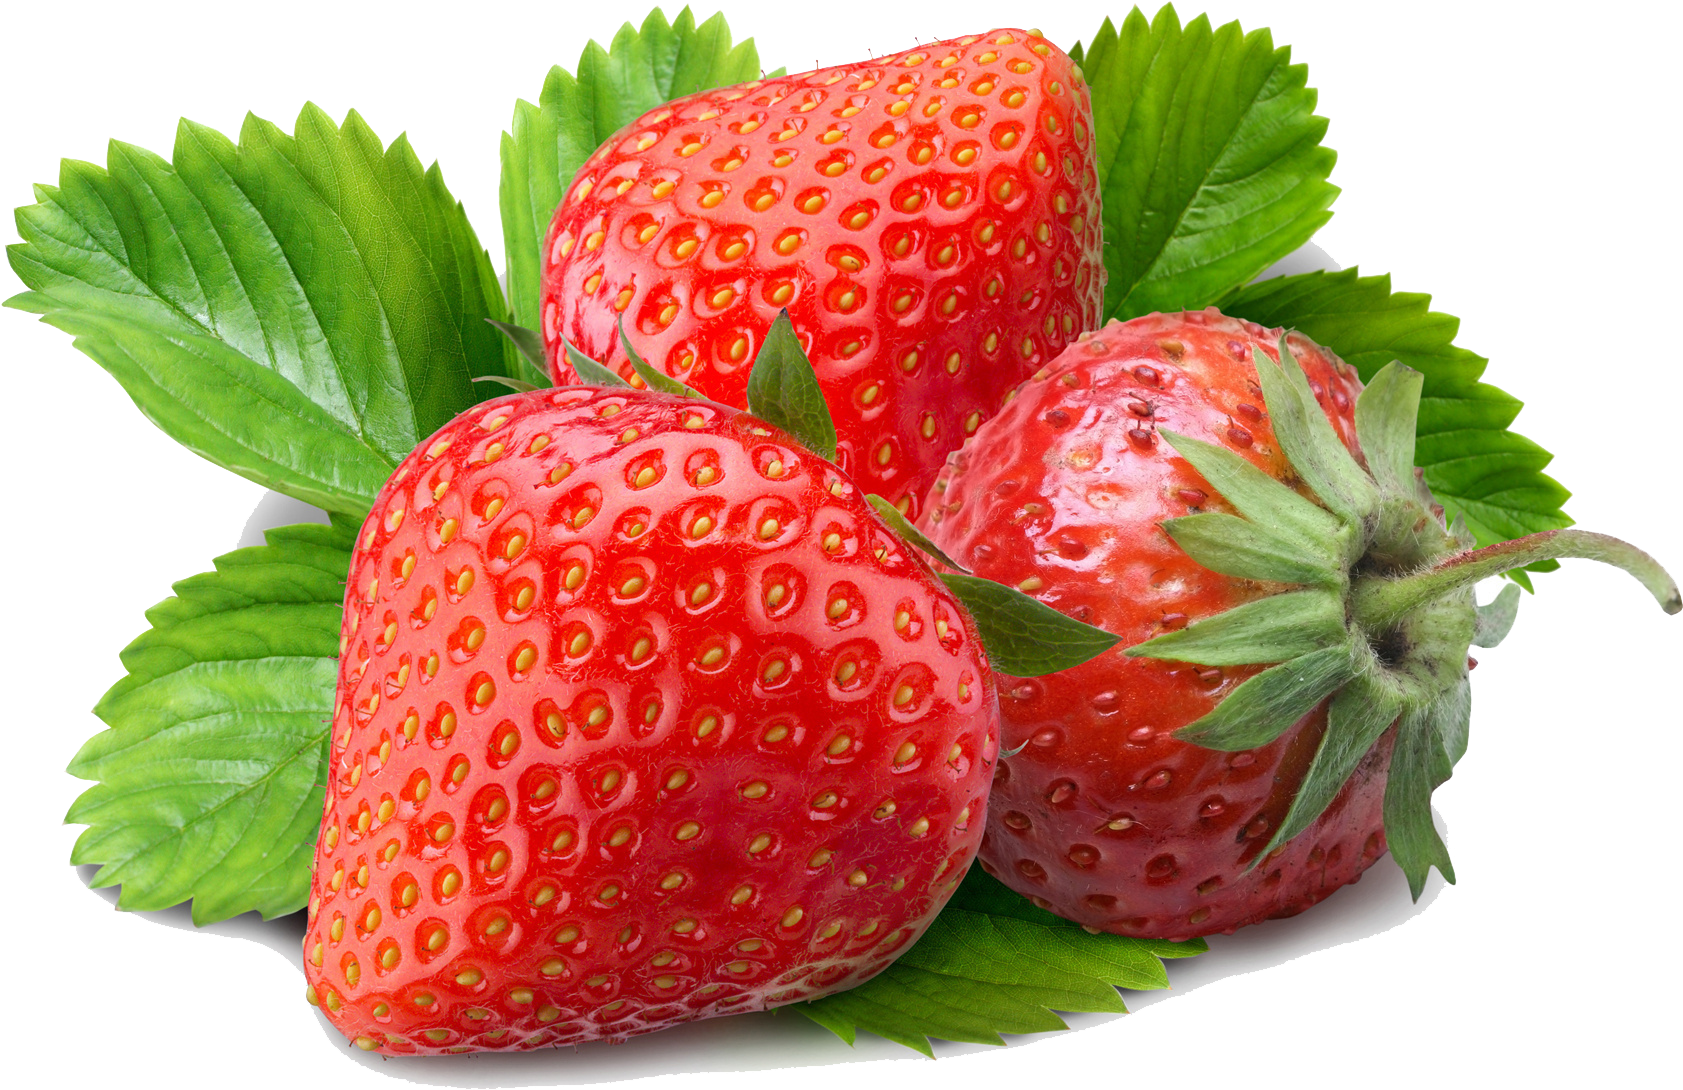 Strawberry - Strawberry Powder - Freeze Dried 1 Lb (1920x1200)